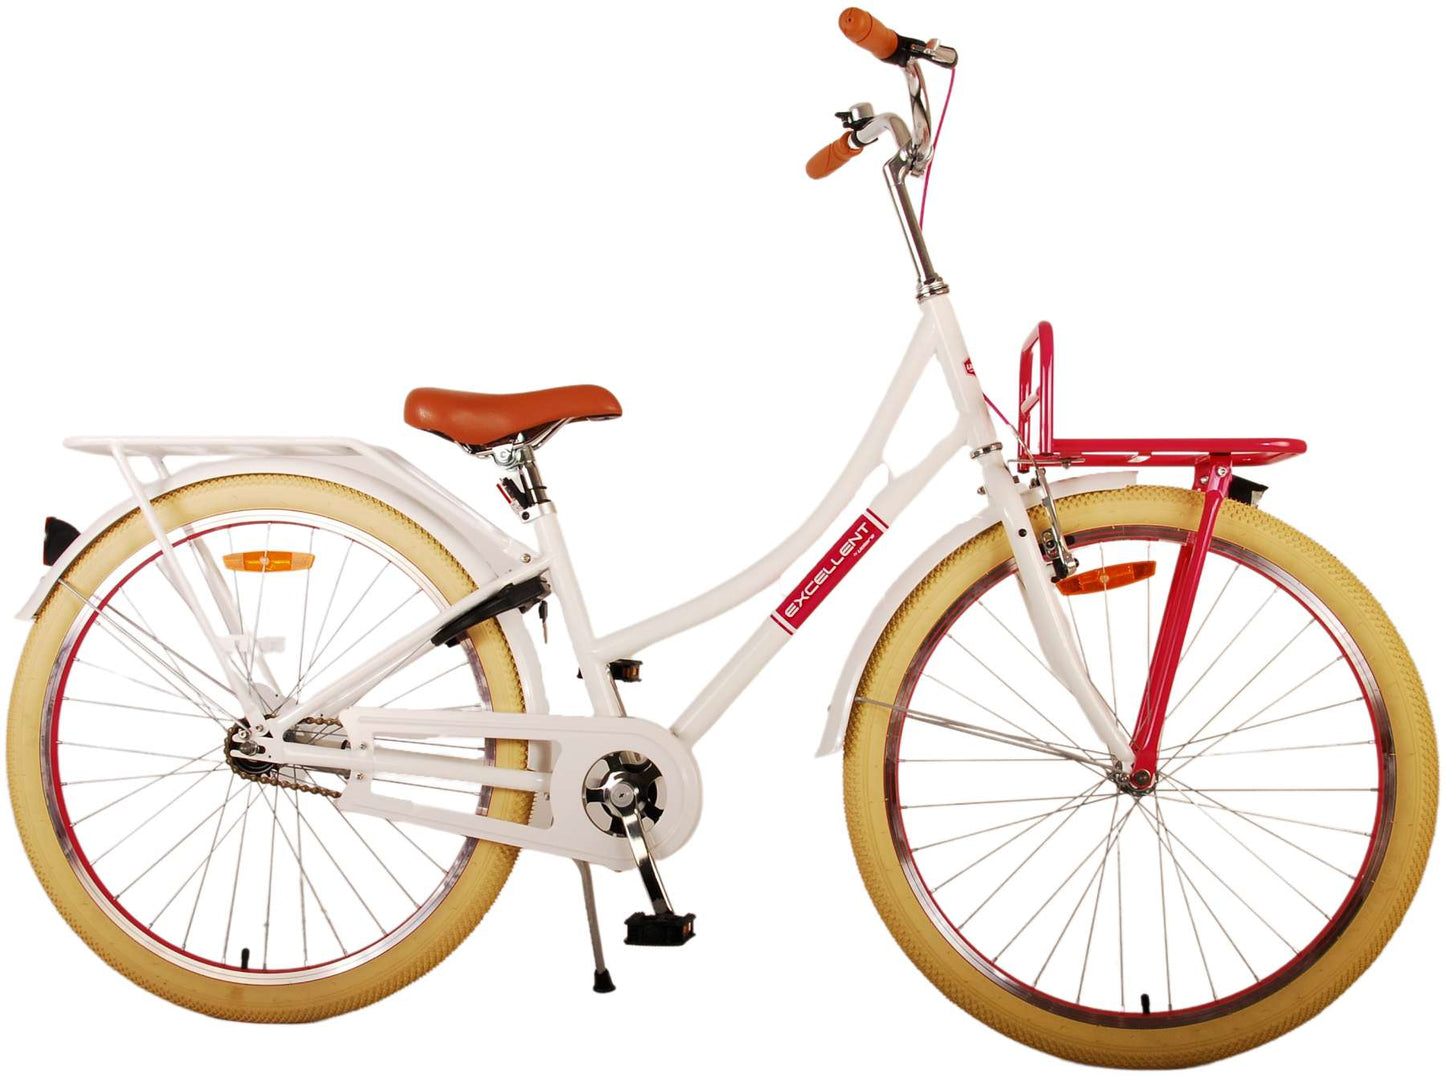 Vlatare eccellente bicicletta per bambini - ragazze - 26 pollici - bianco